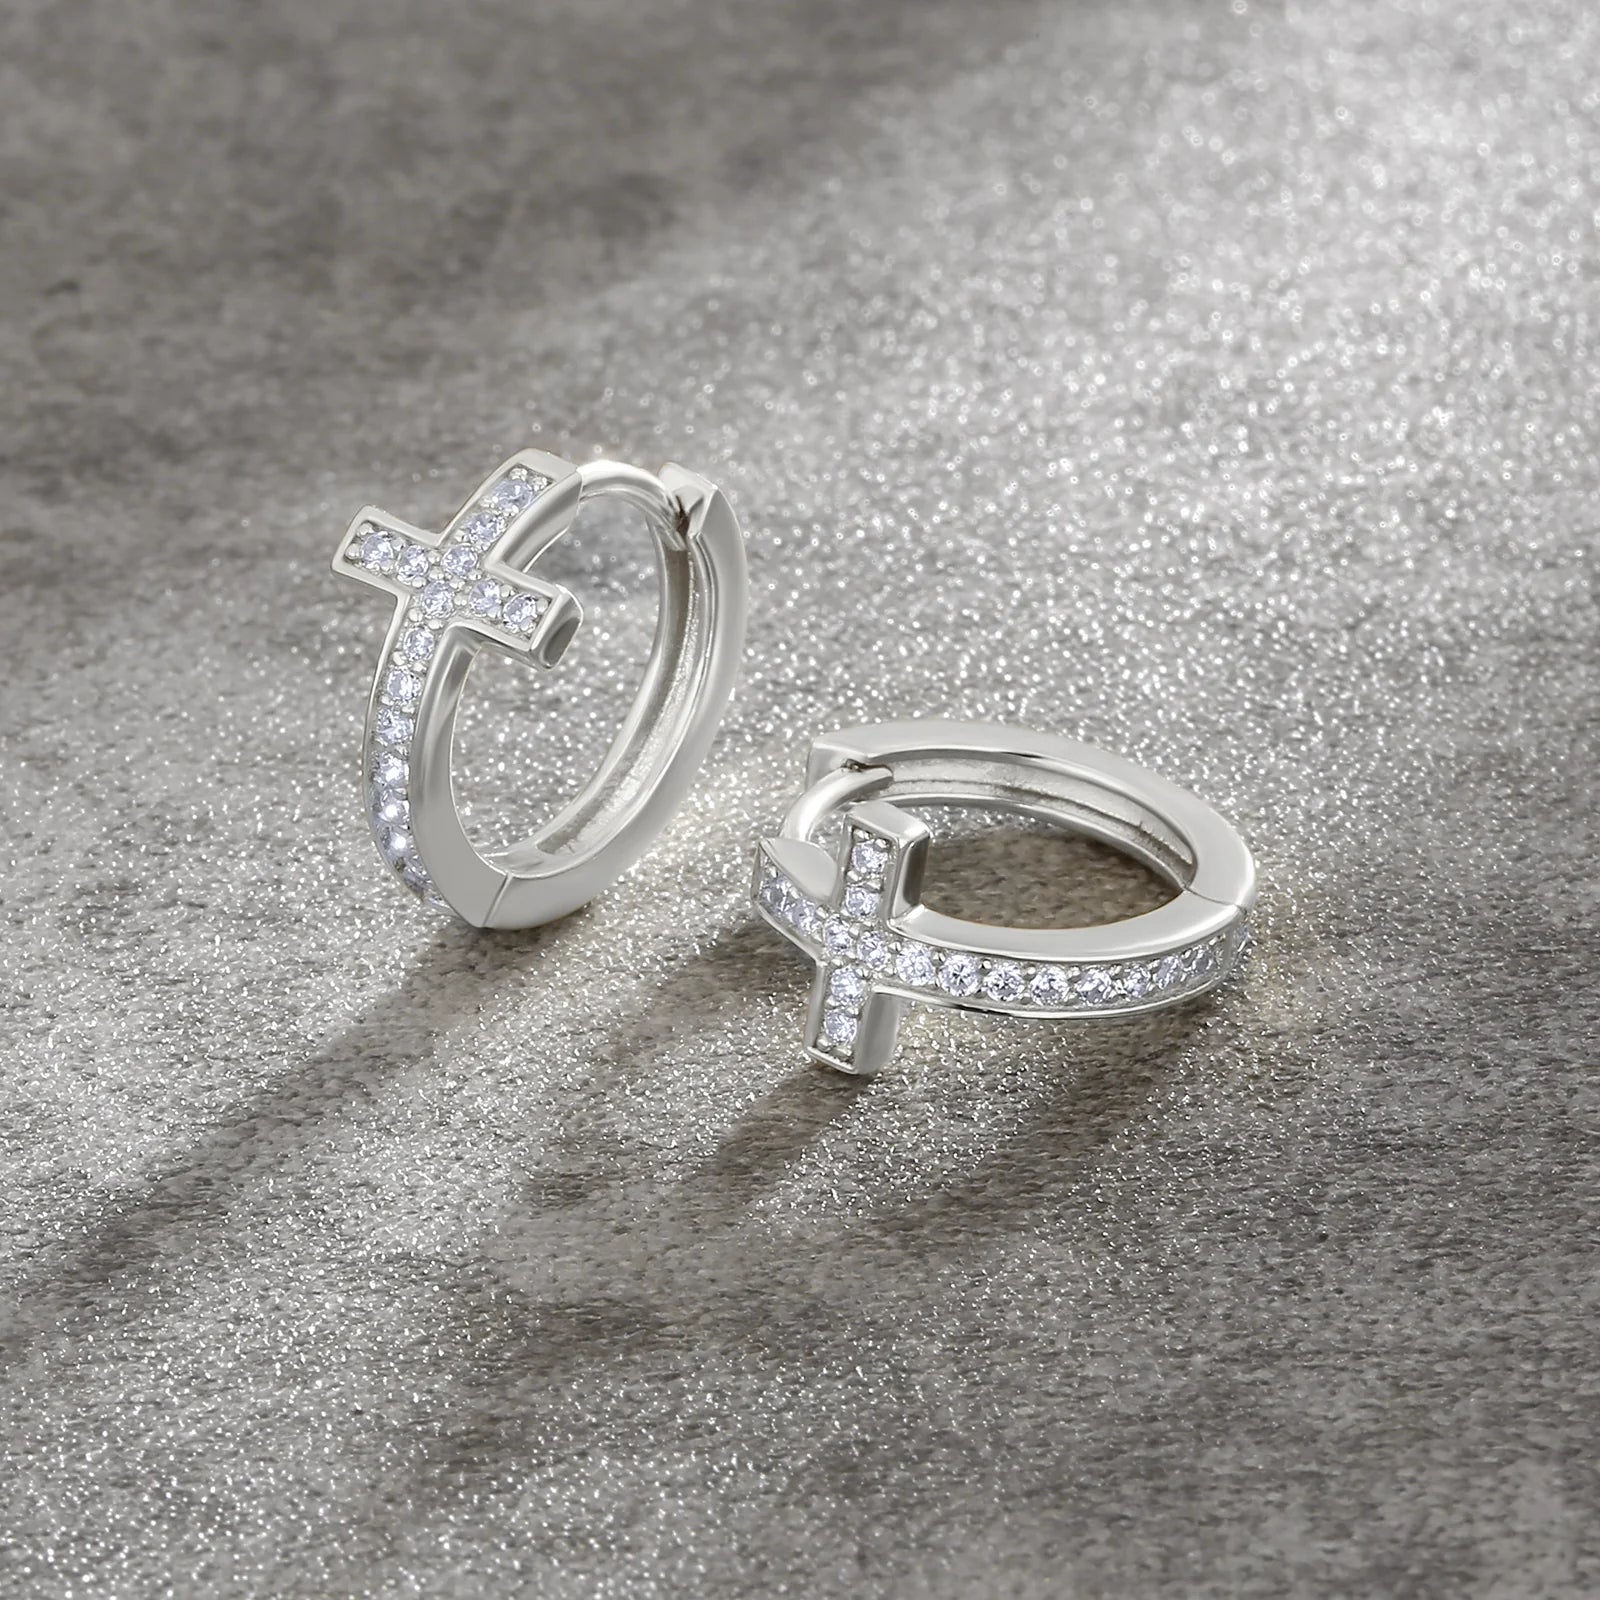 S925 Silver Iced Diamond Cross Hoop Earrings in White Gold - 15mm Earrings 